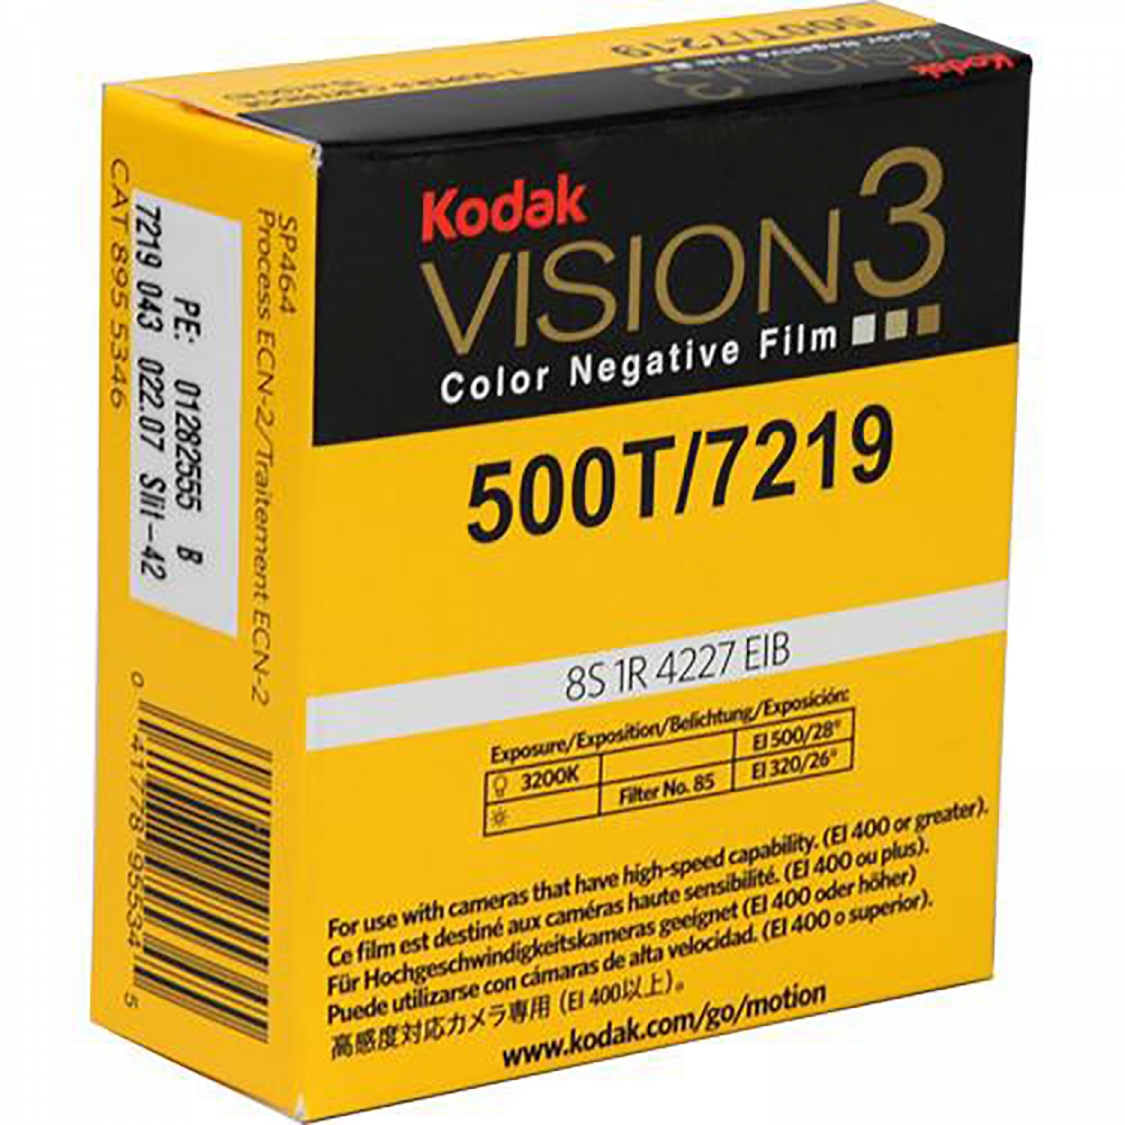 T 500 3. Kodak Vision 3 500t. Кинопленка Kodak Vision. Kodak Vision 100t. Kodak 7219.